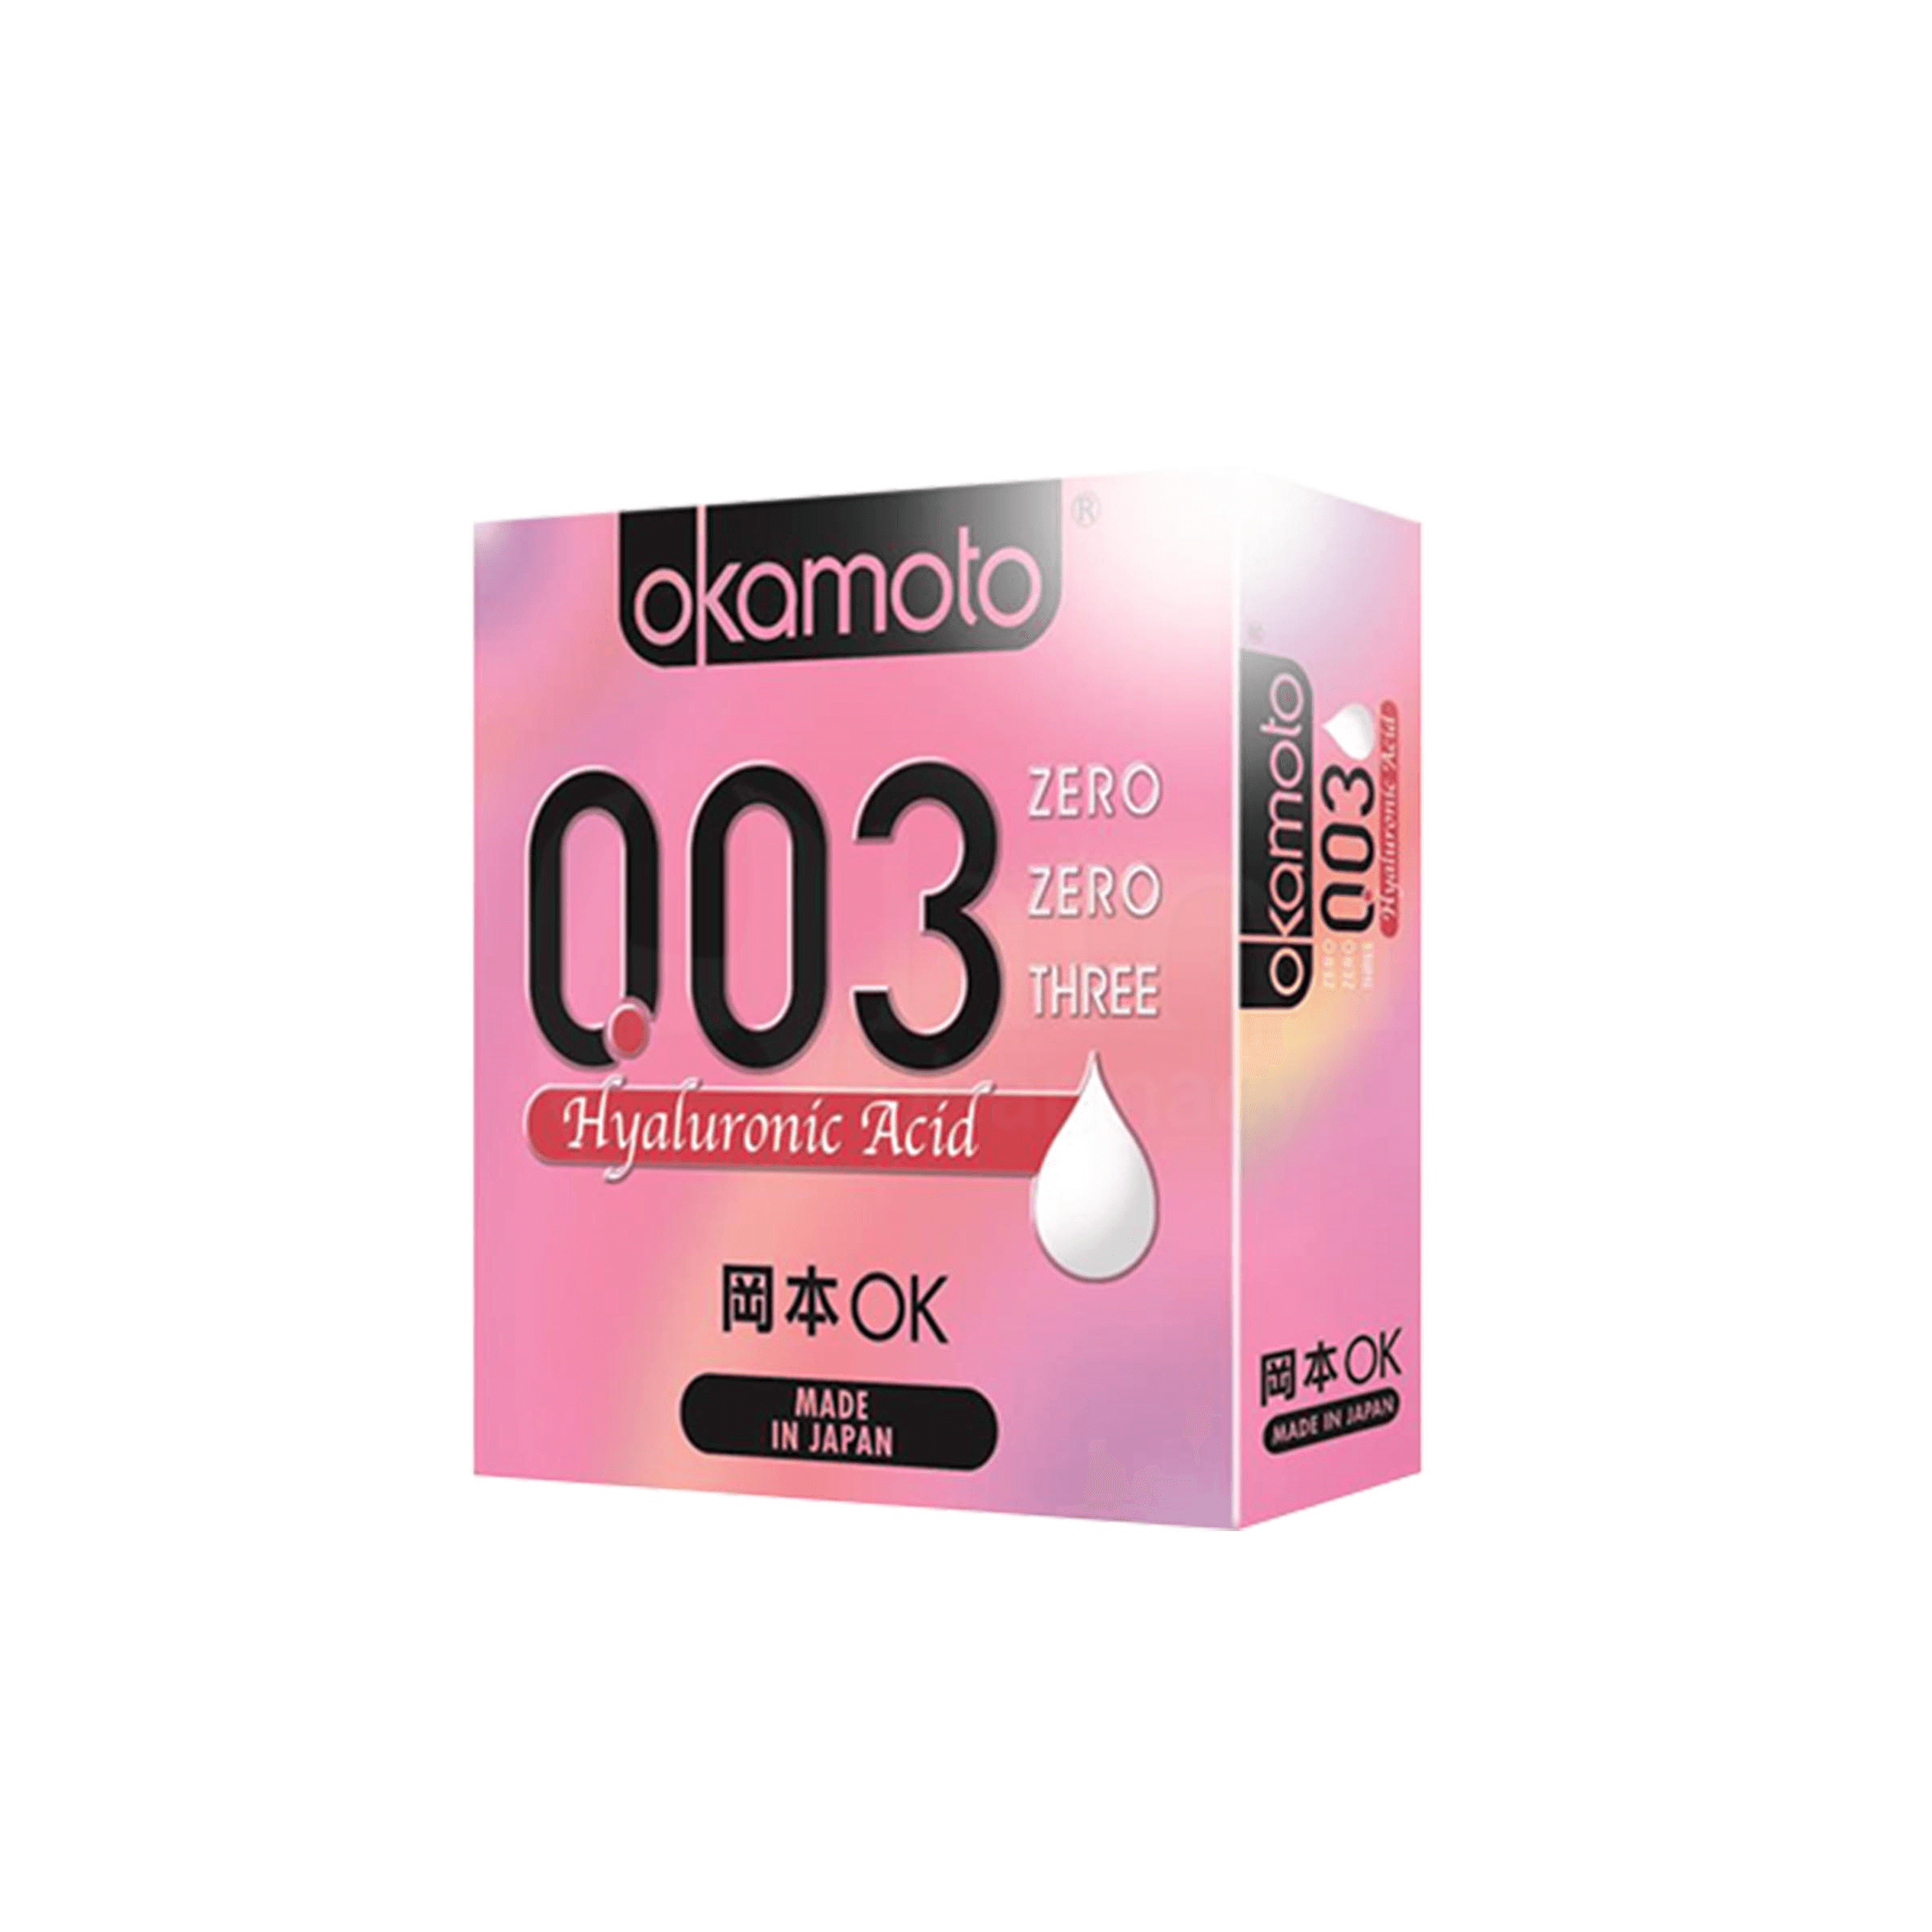 Okamoto 003 Hyaluronic Acid 3'S